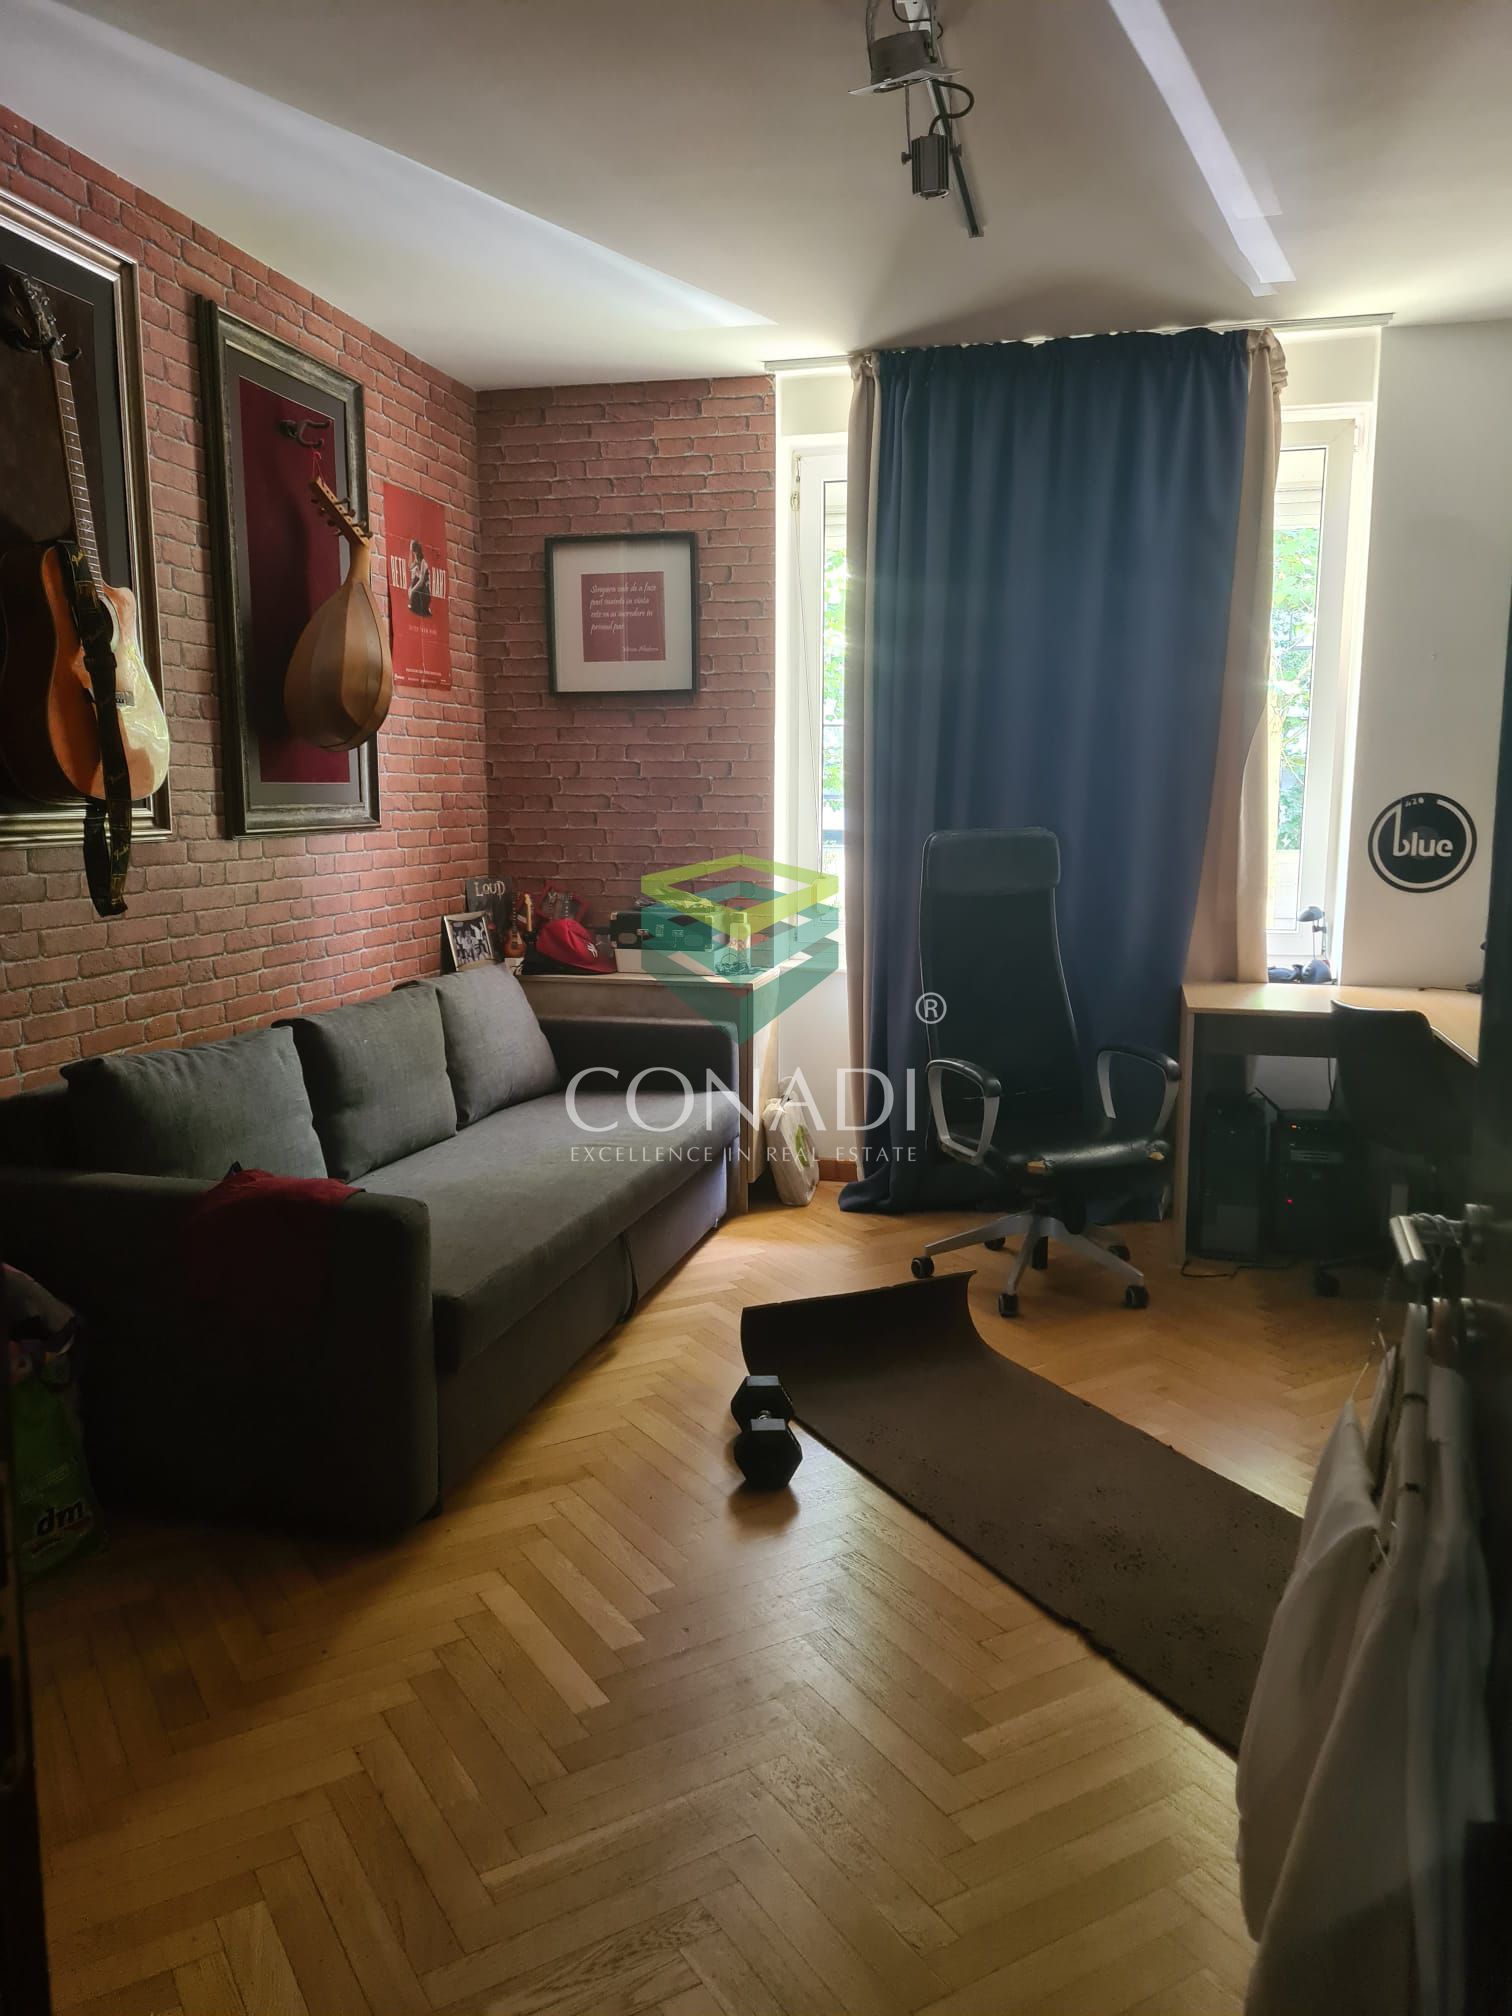 Apartament cu 4 camere in Arcom Residence -Calea Plevnei